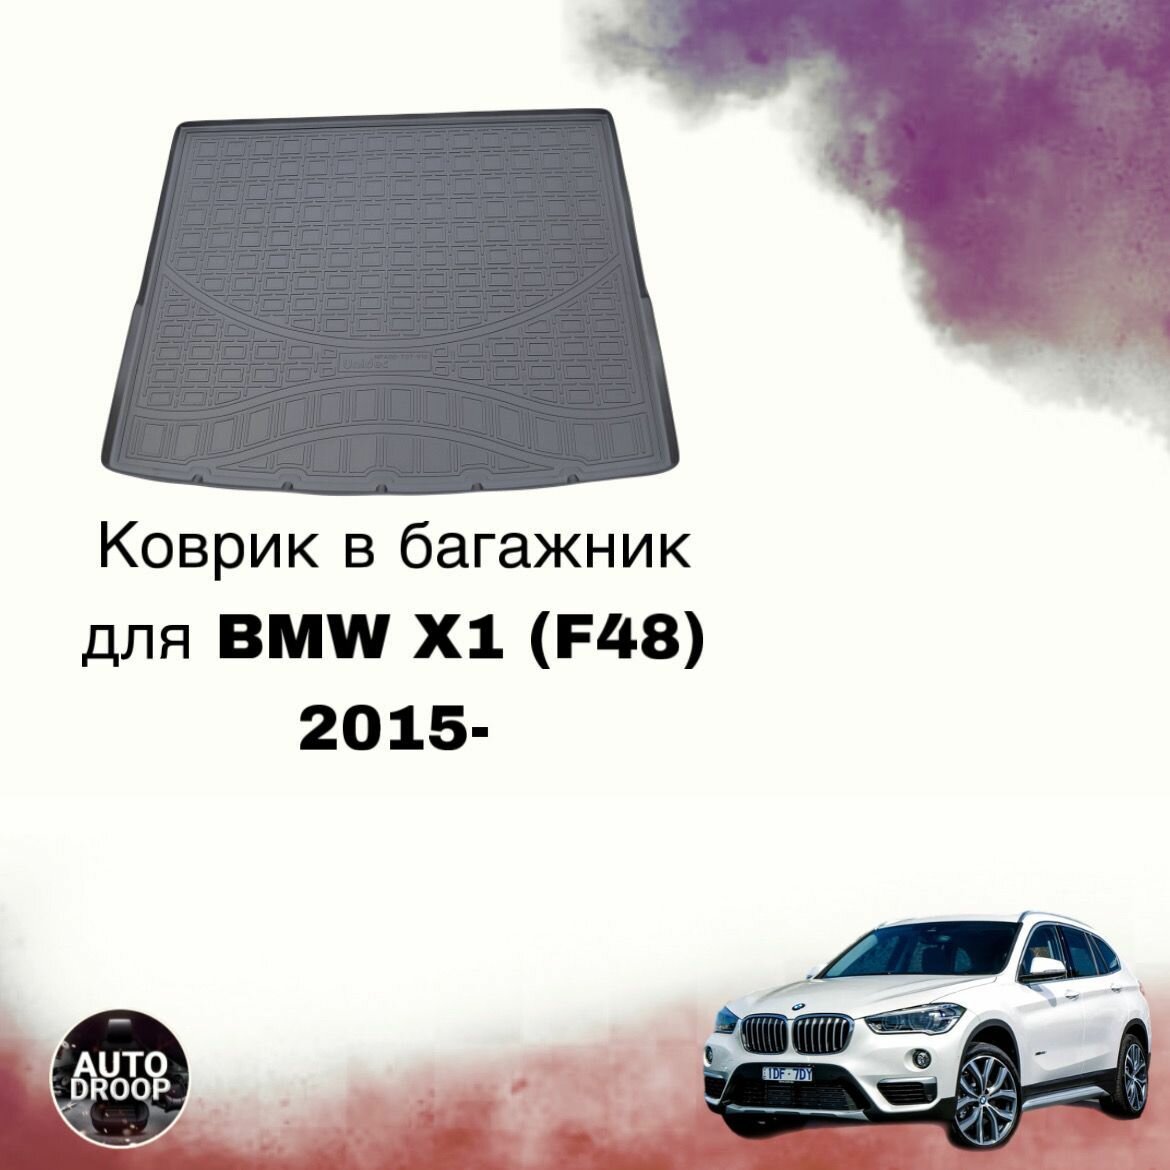 Коврик в багажник для BMW X1 (F48) 2015-